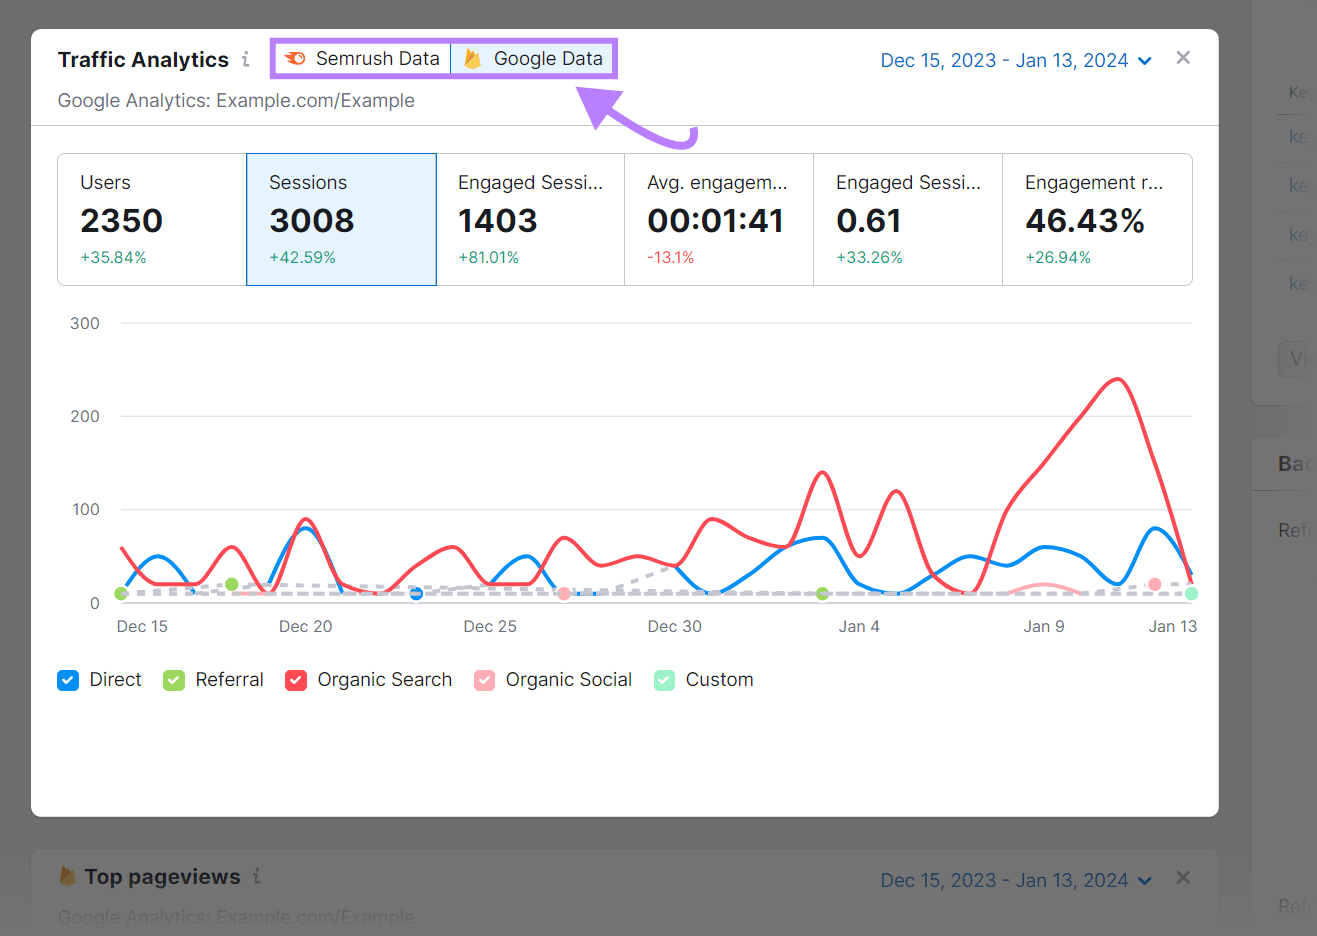 Traffic Analytics widget showing Semrush and Google data combined